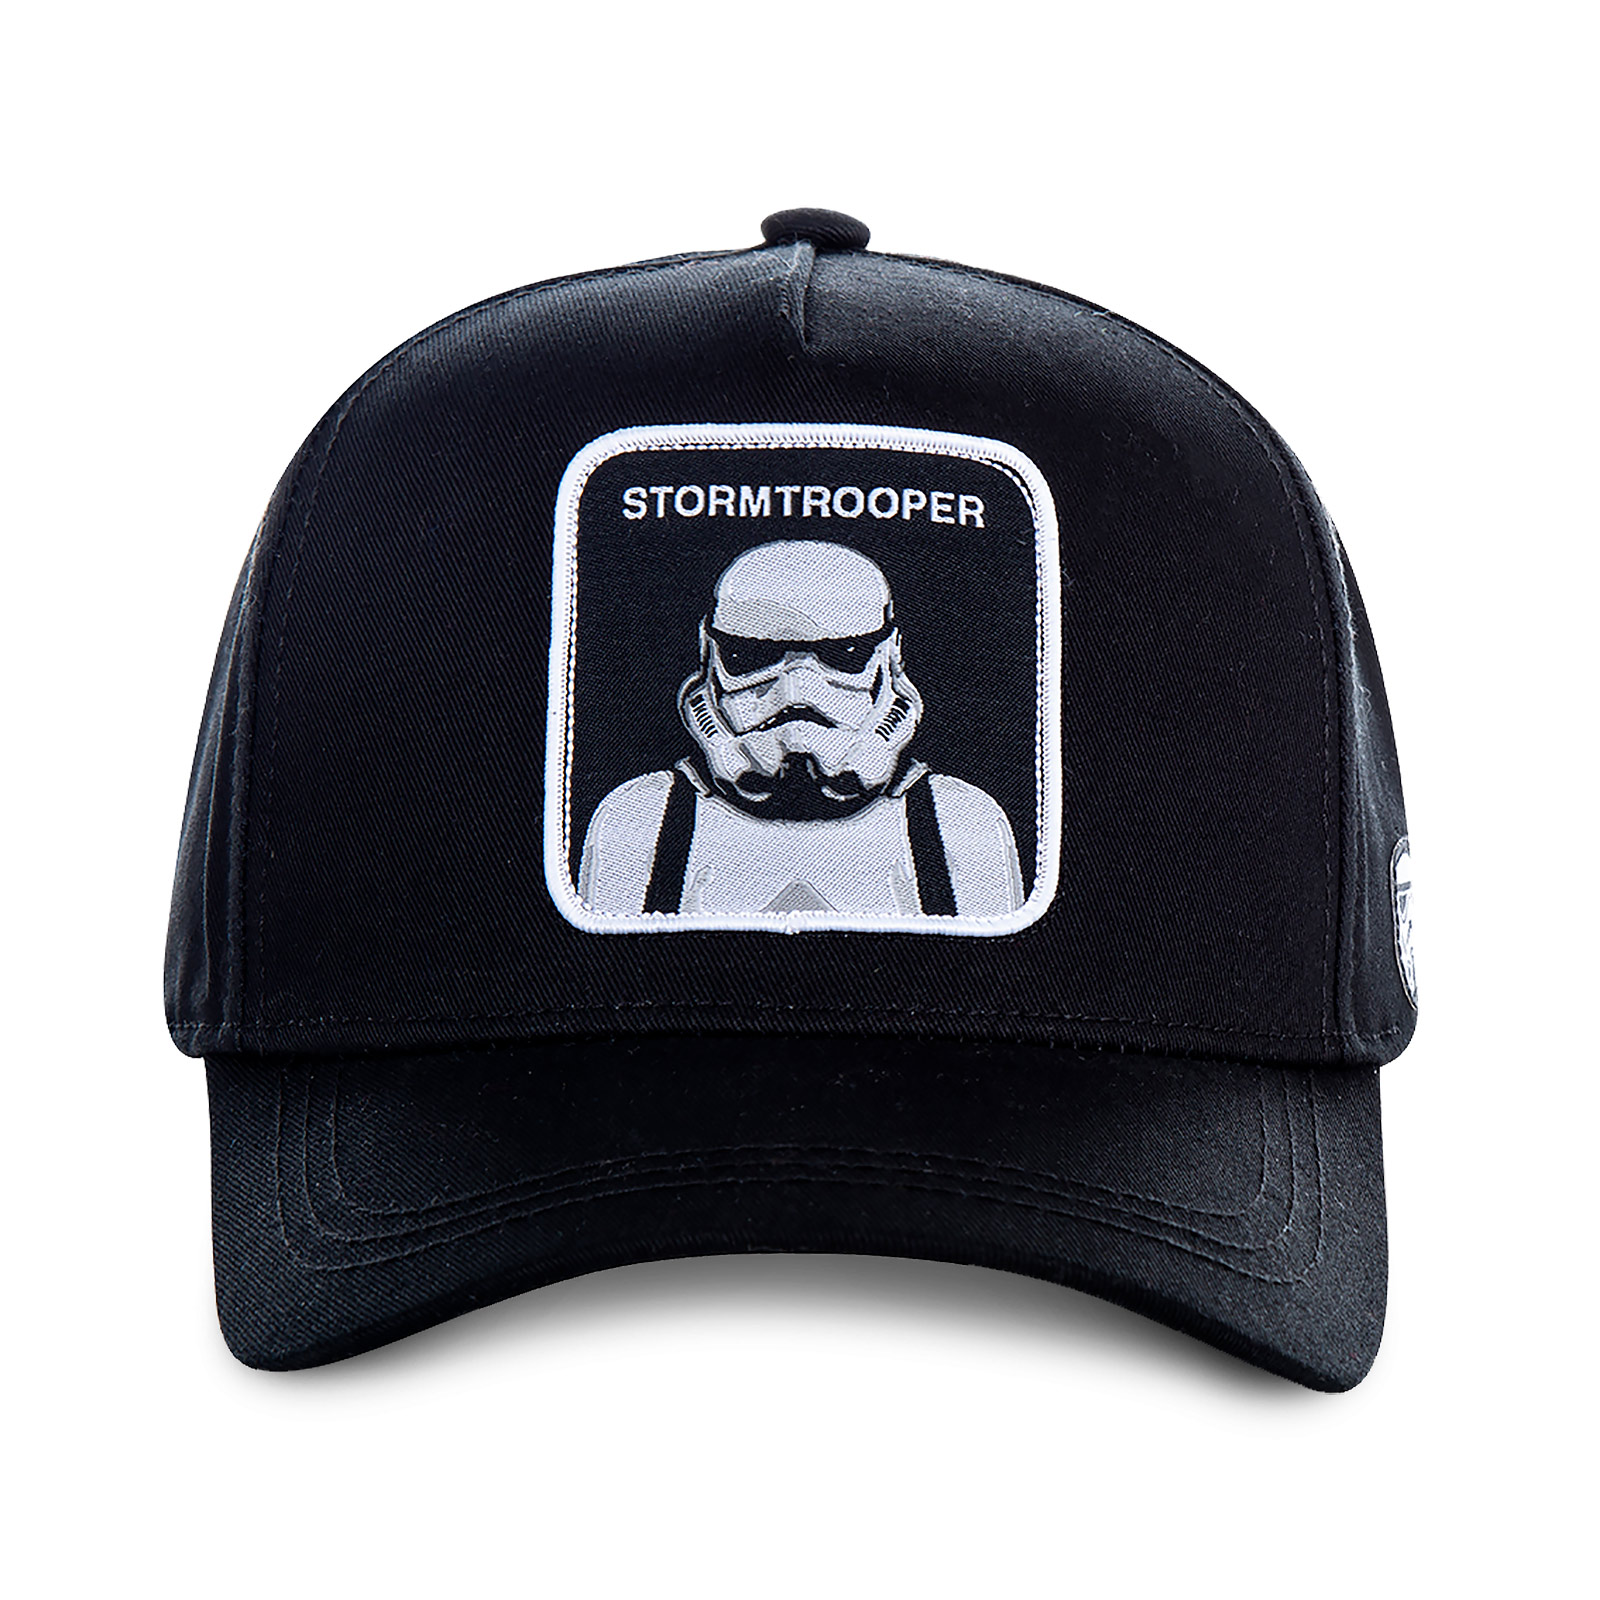 Stormtrooper Capslab Basecap schwarz - Star Wars